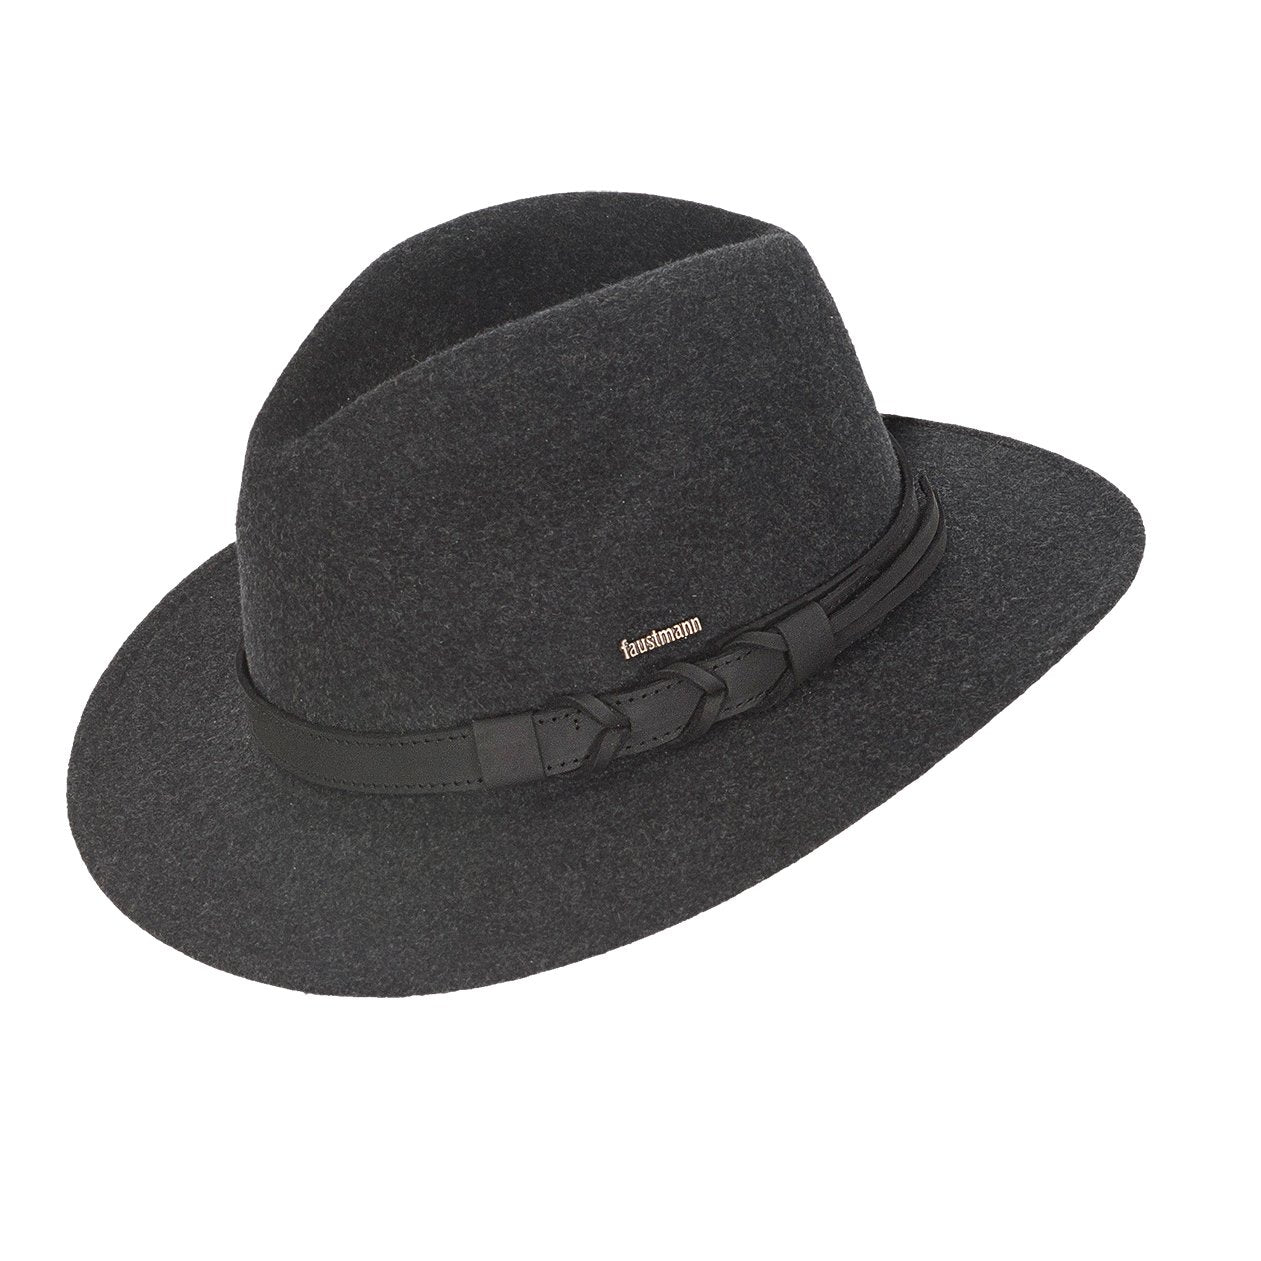 Faustmann Outleaf Wool Traveller Hat - Anthra/Black